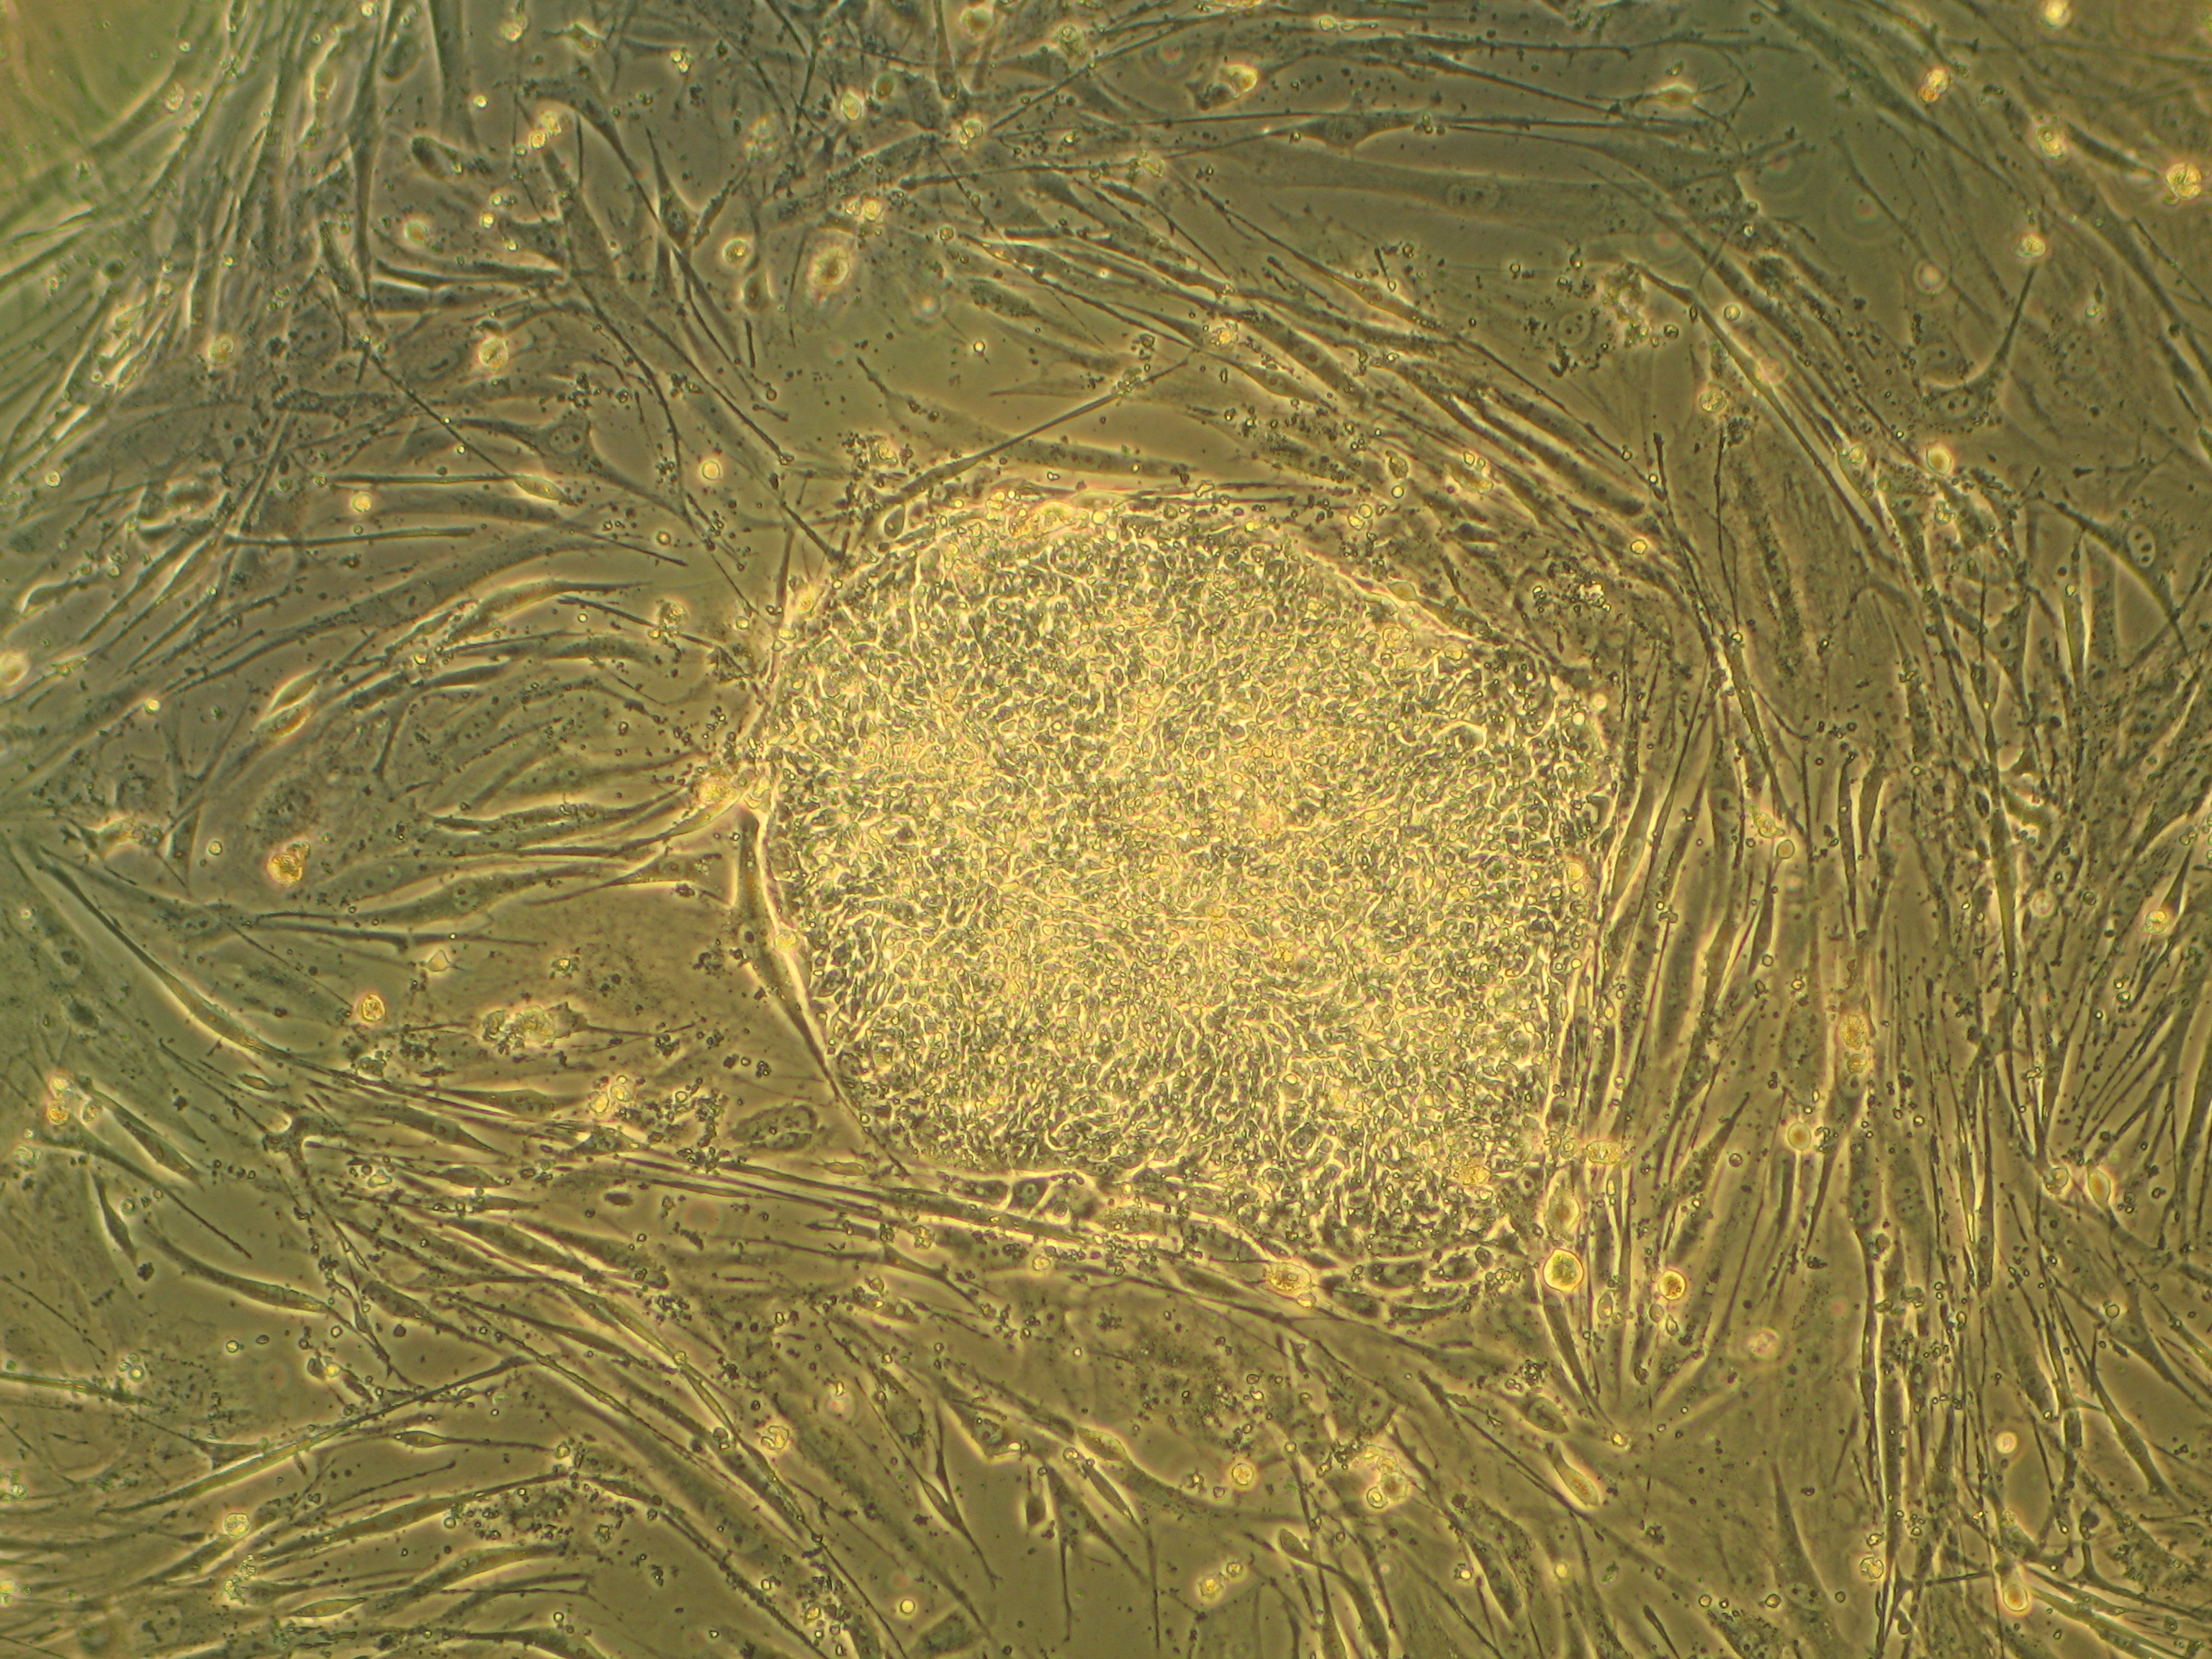 Δημιουργία ανθρωπίνων βλαστικών κυττάρων από μισό γονιδίωμα